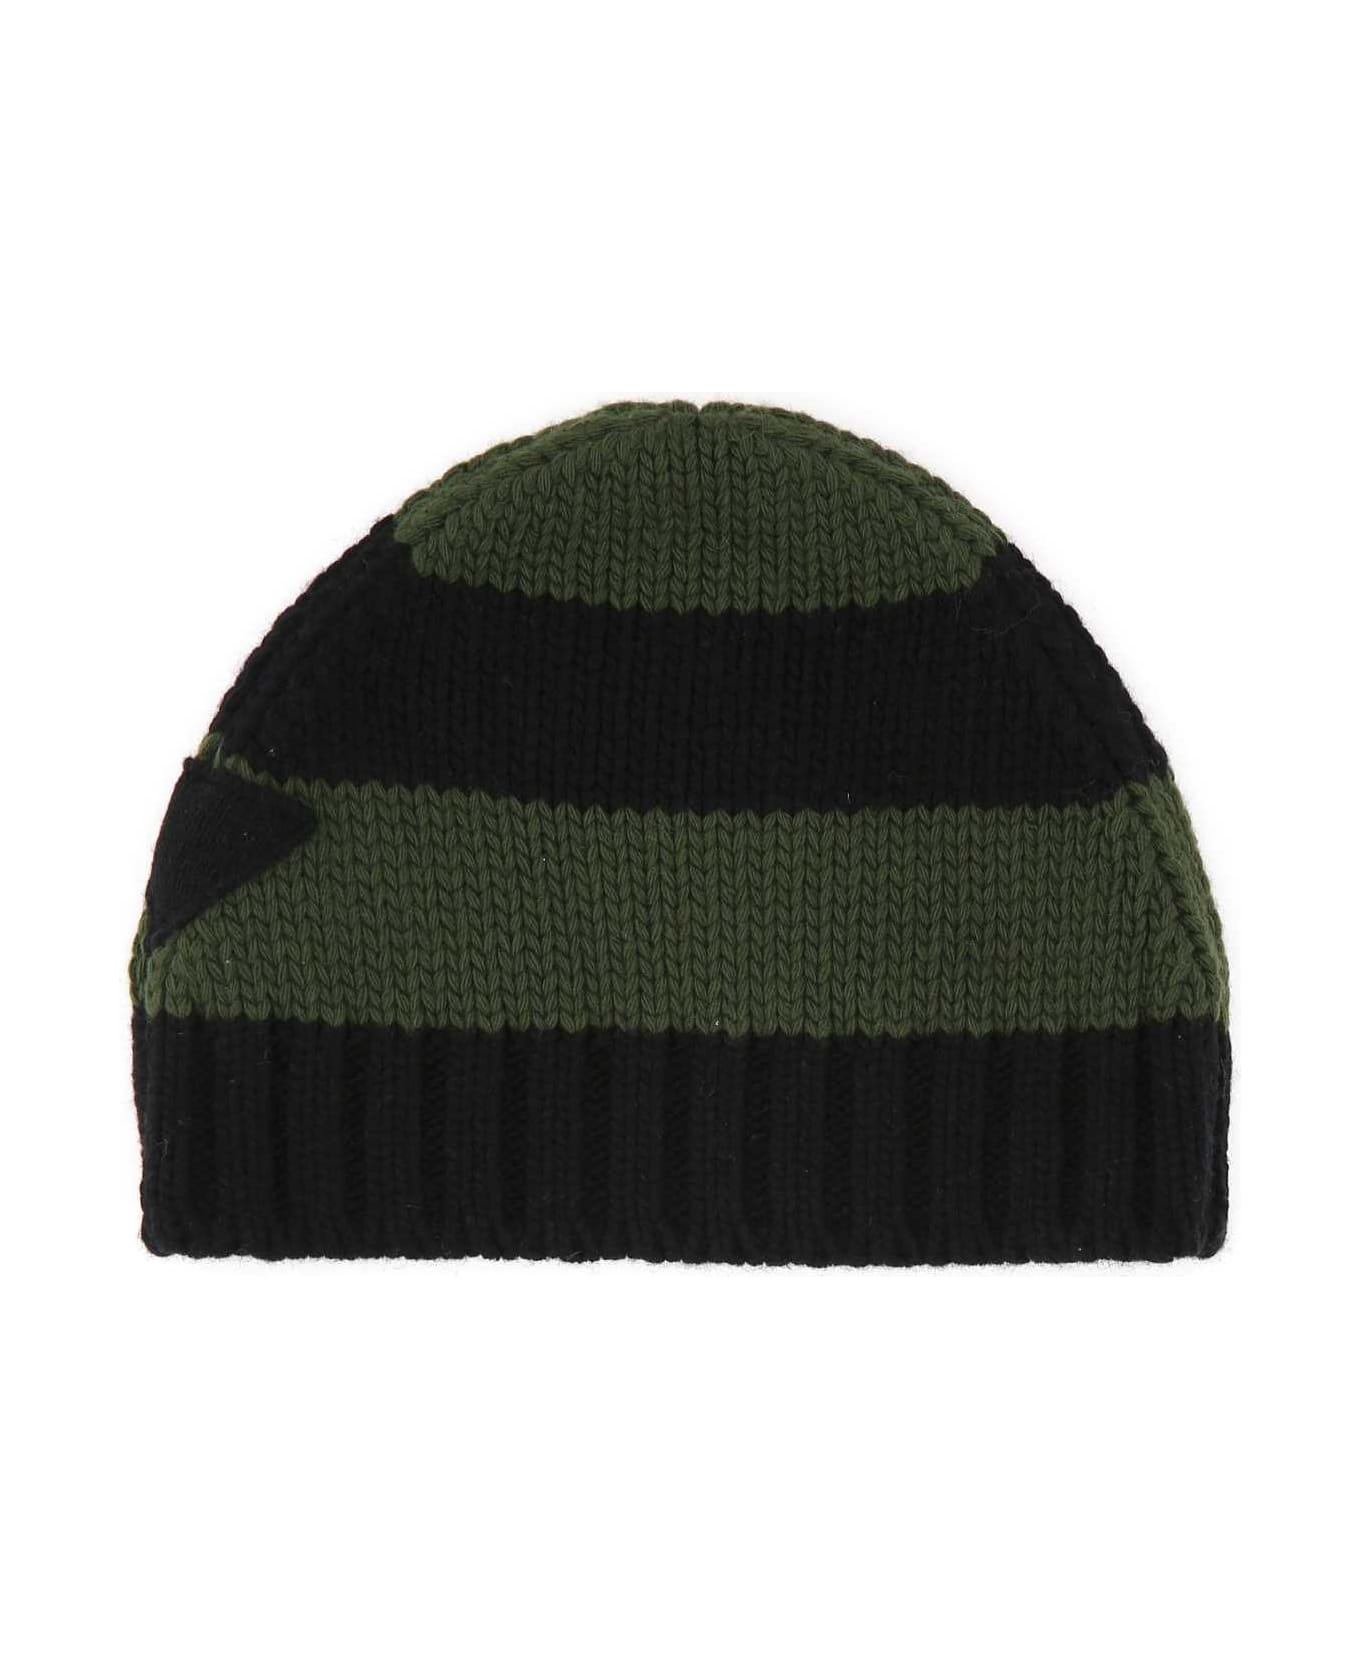 Prada Embroidered Wool Blend Beanie Hat - F0Q24 帽子